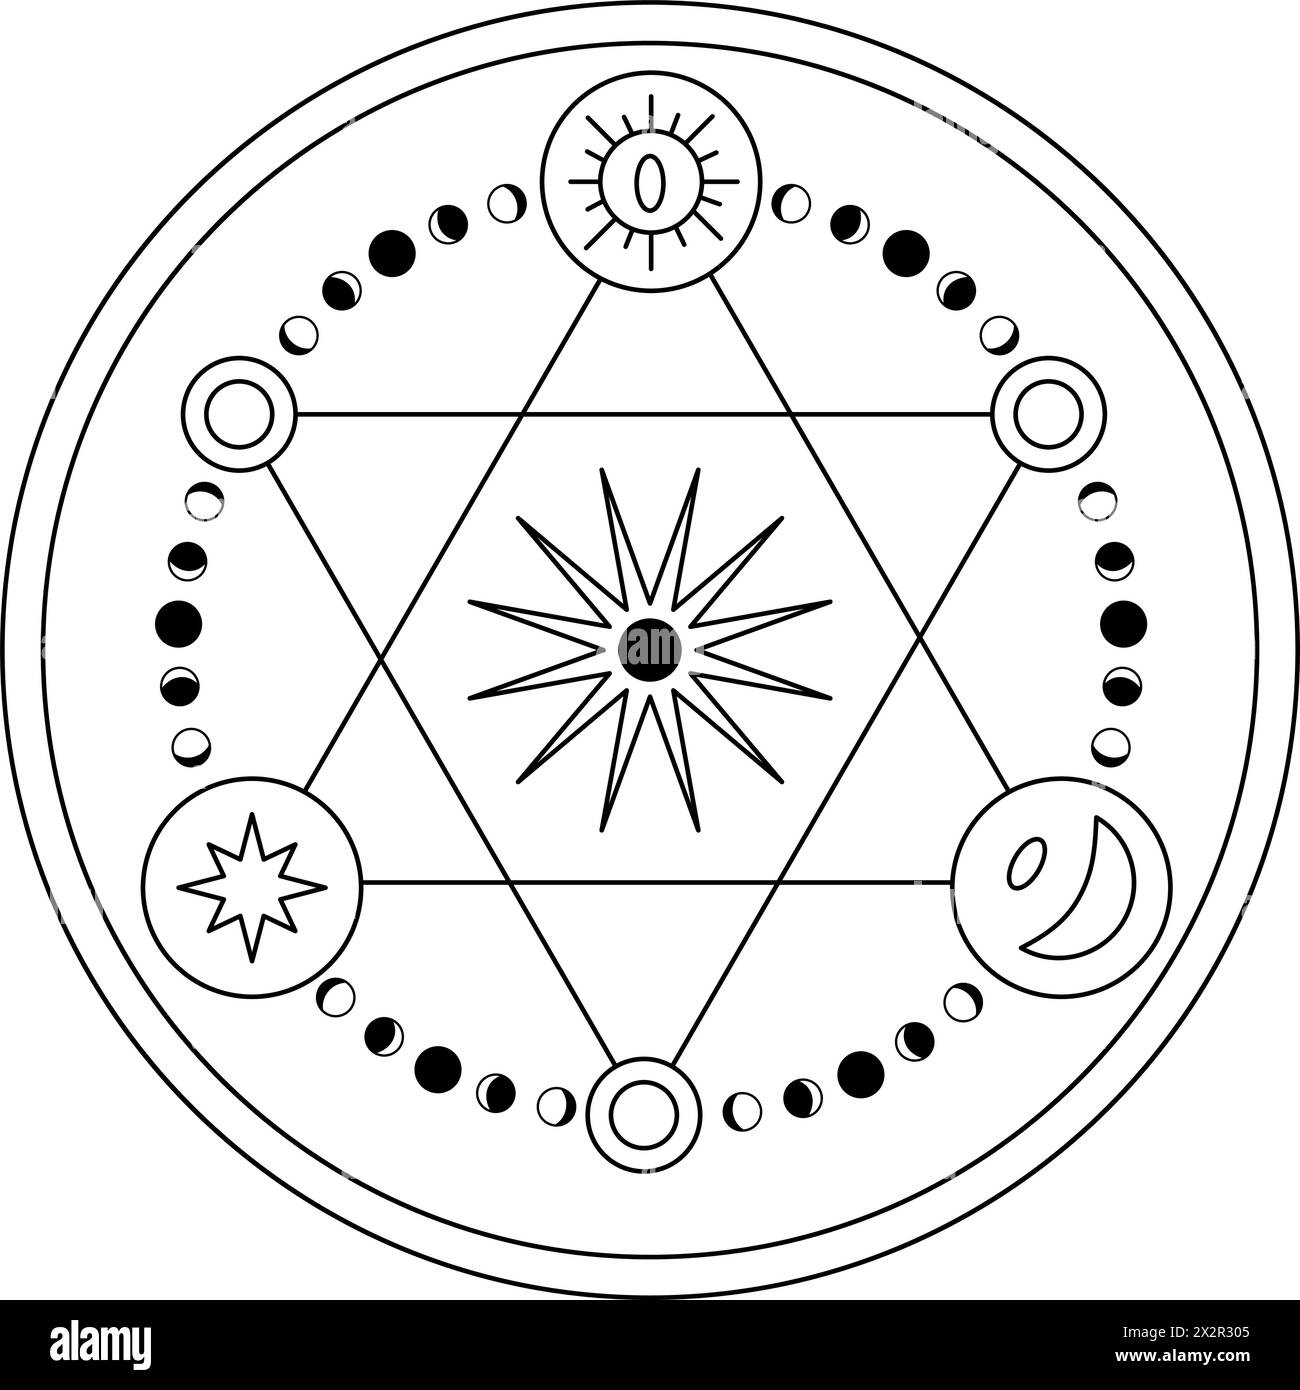 Vecteur magique symbole ésotérique. Illustration du signe mystique occulte avec soleil, phases de lune, étoile et croissant dans le style linéaire. Dessin rond de contour de fantaisie pour icône ou logo. Noir et blanc. Illustration de Vecteur